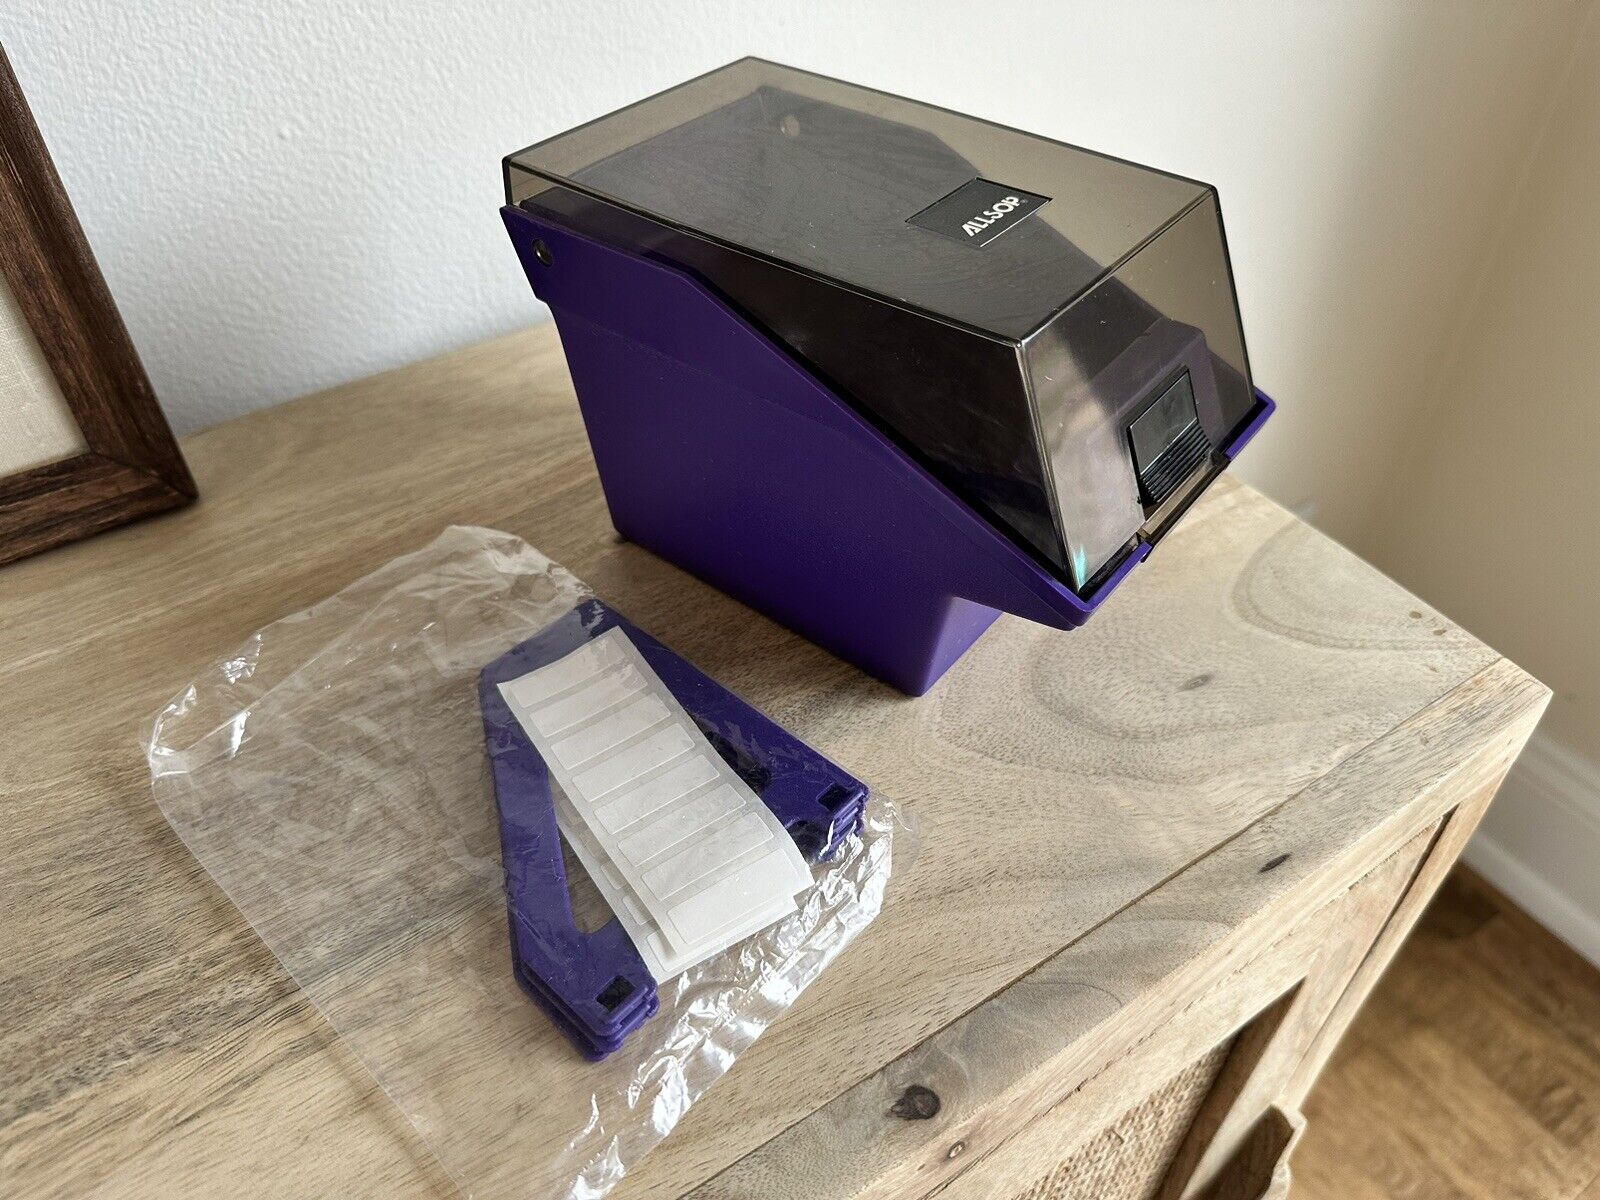 Vintage ALLSOP 3.5” Floppy Disk Plastic Storage Box Case Holder Organizer Purple